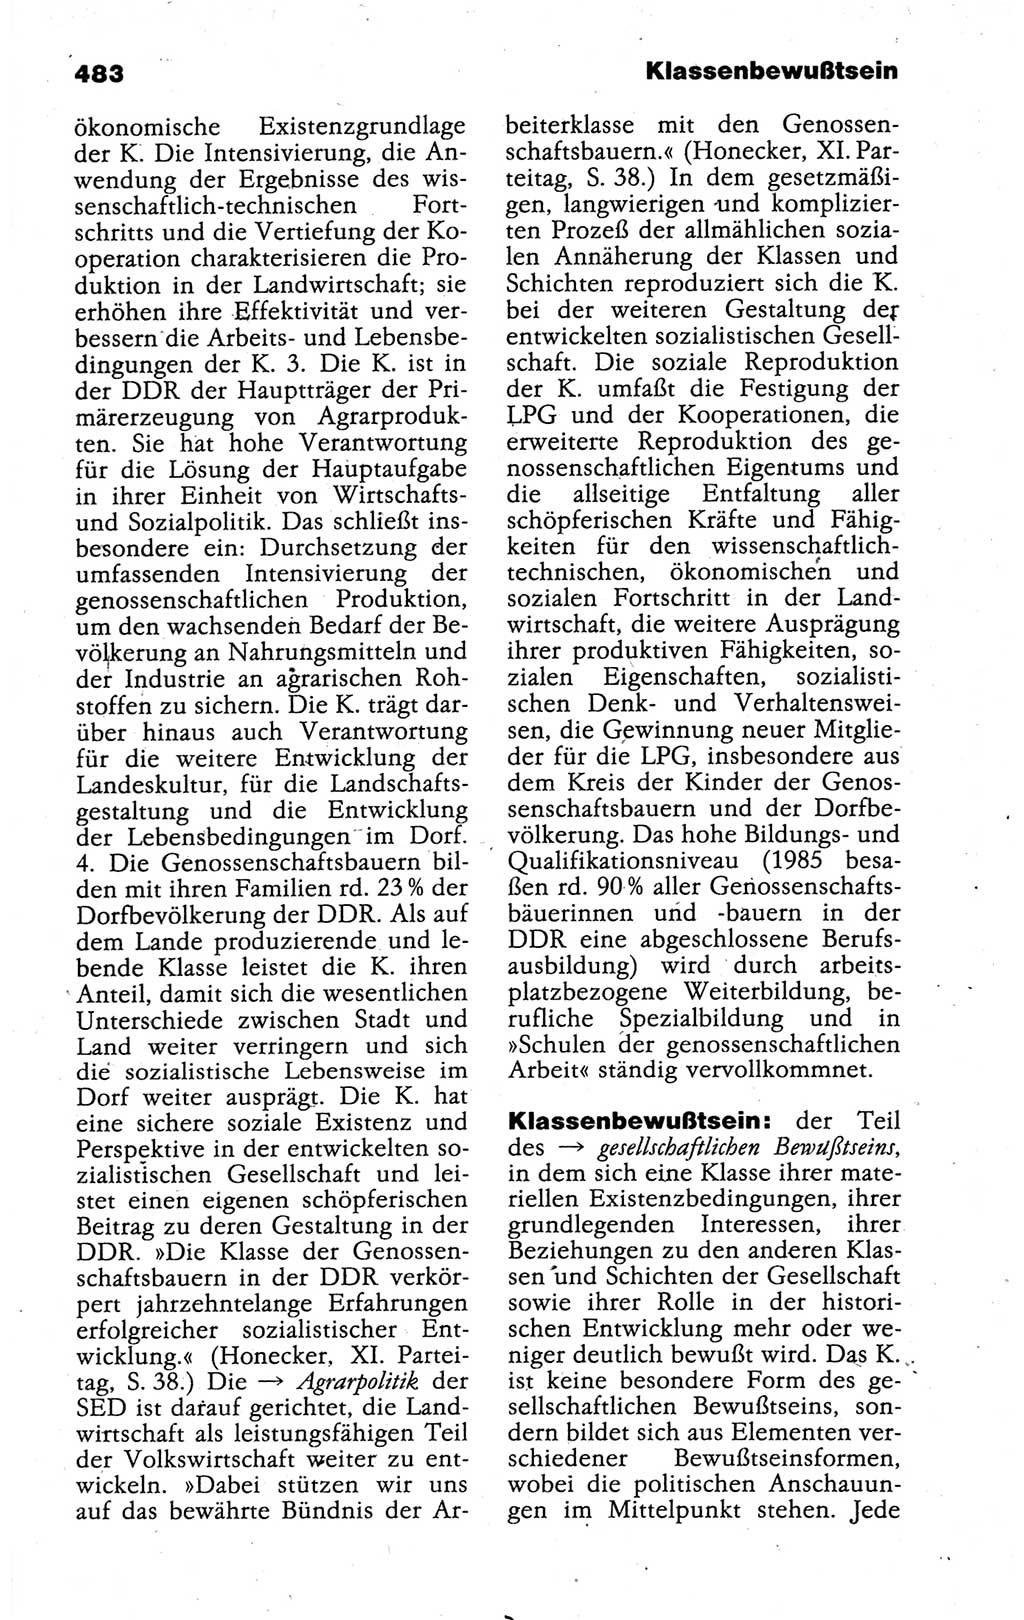 Kleines politisches Wörterbuch [Deutsche Demokratische Republik (DDR)] 1988, Seite 483 (Kl. pol. Wb. DDR 1988, S. 483)